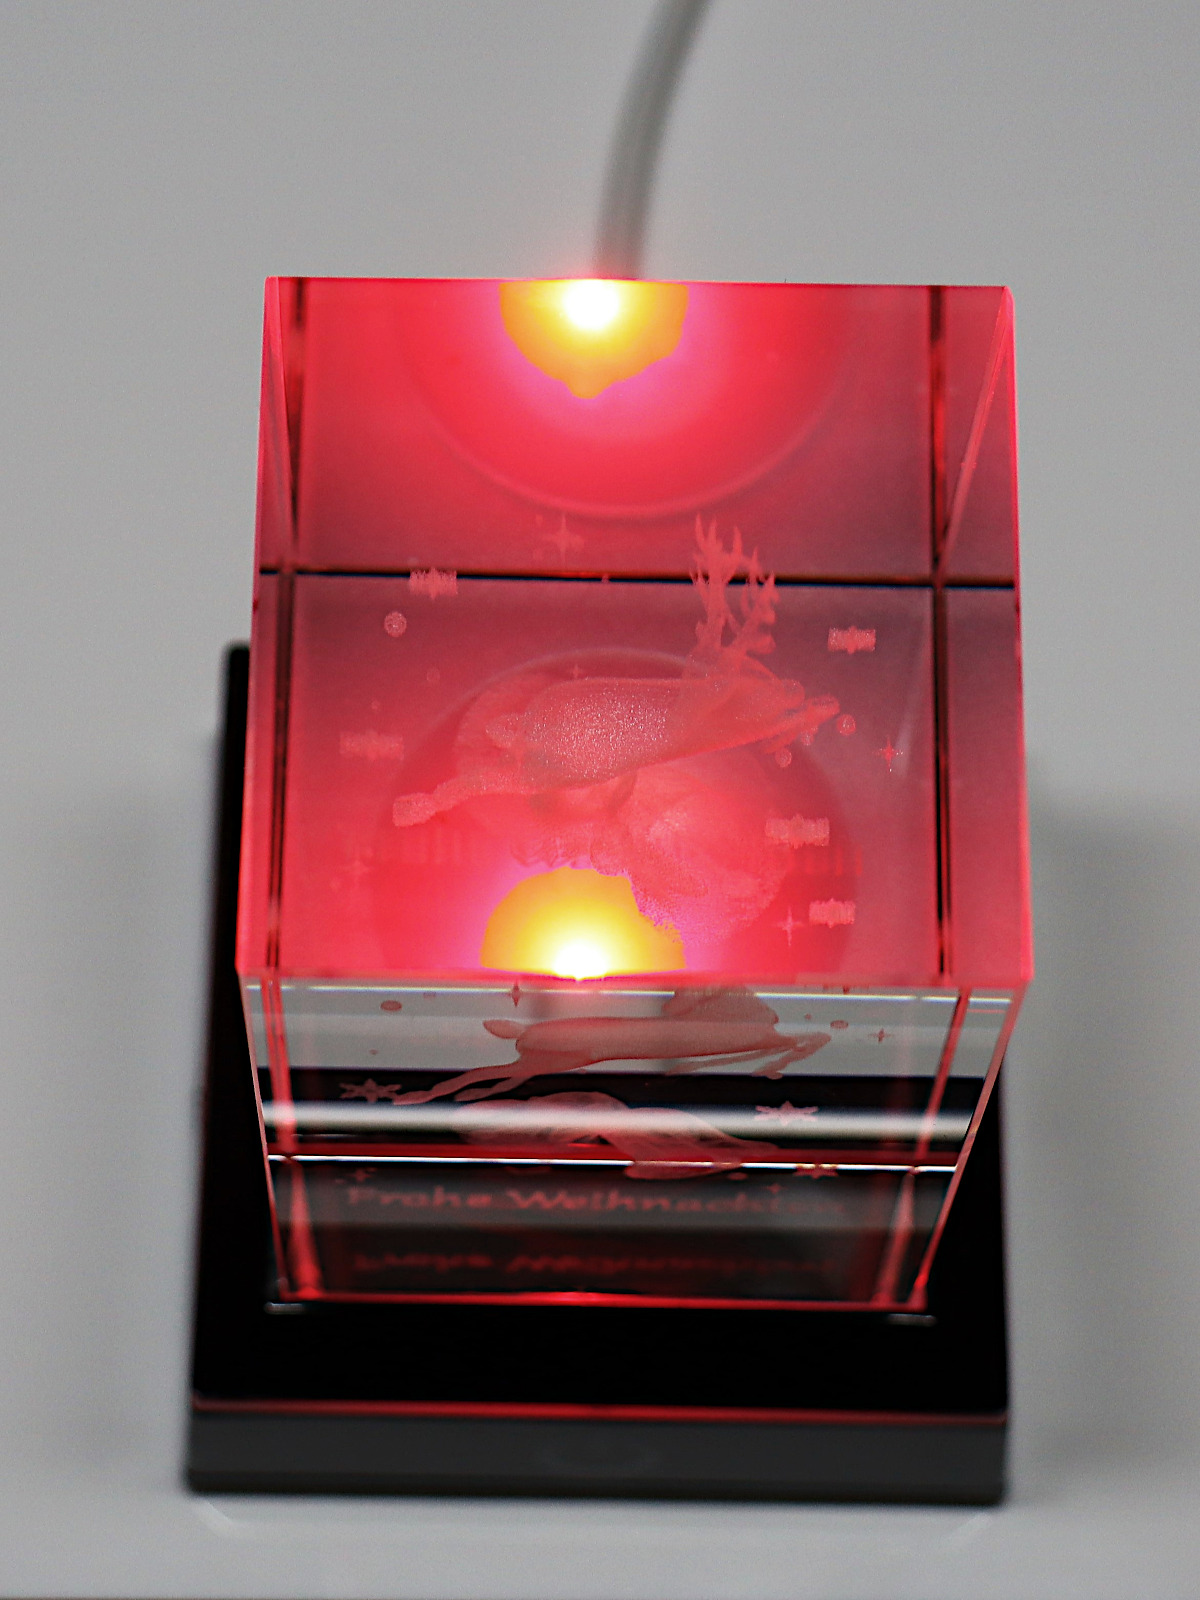 Kristallquader 3D Rentier 50x50x80